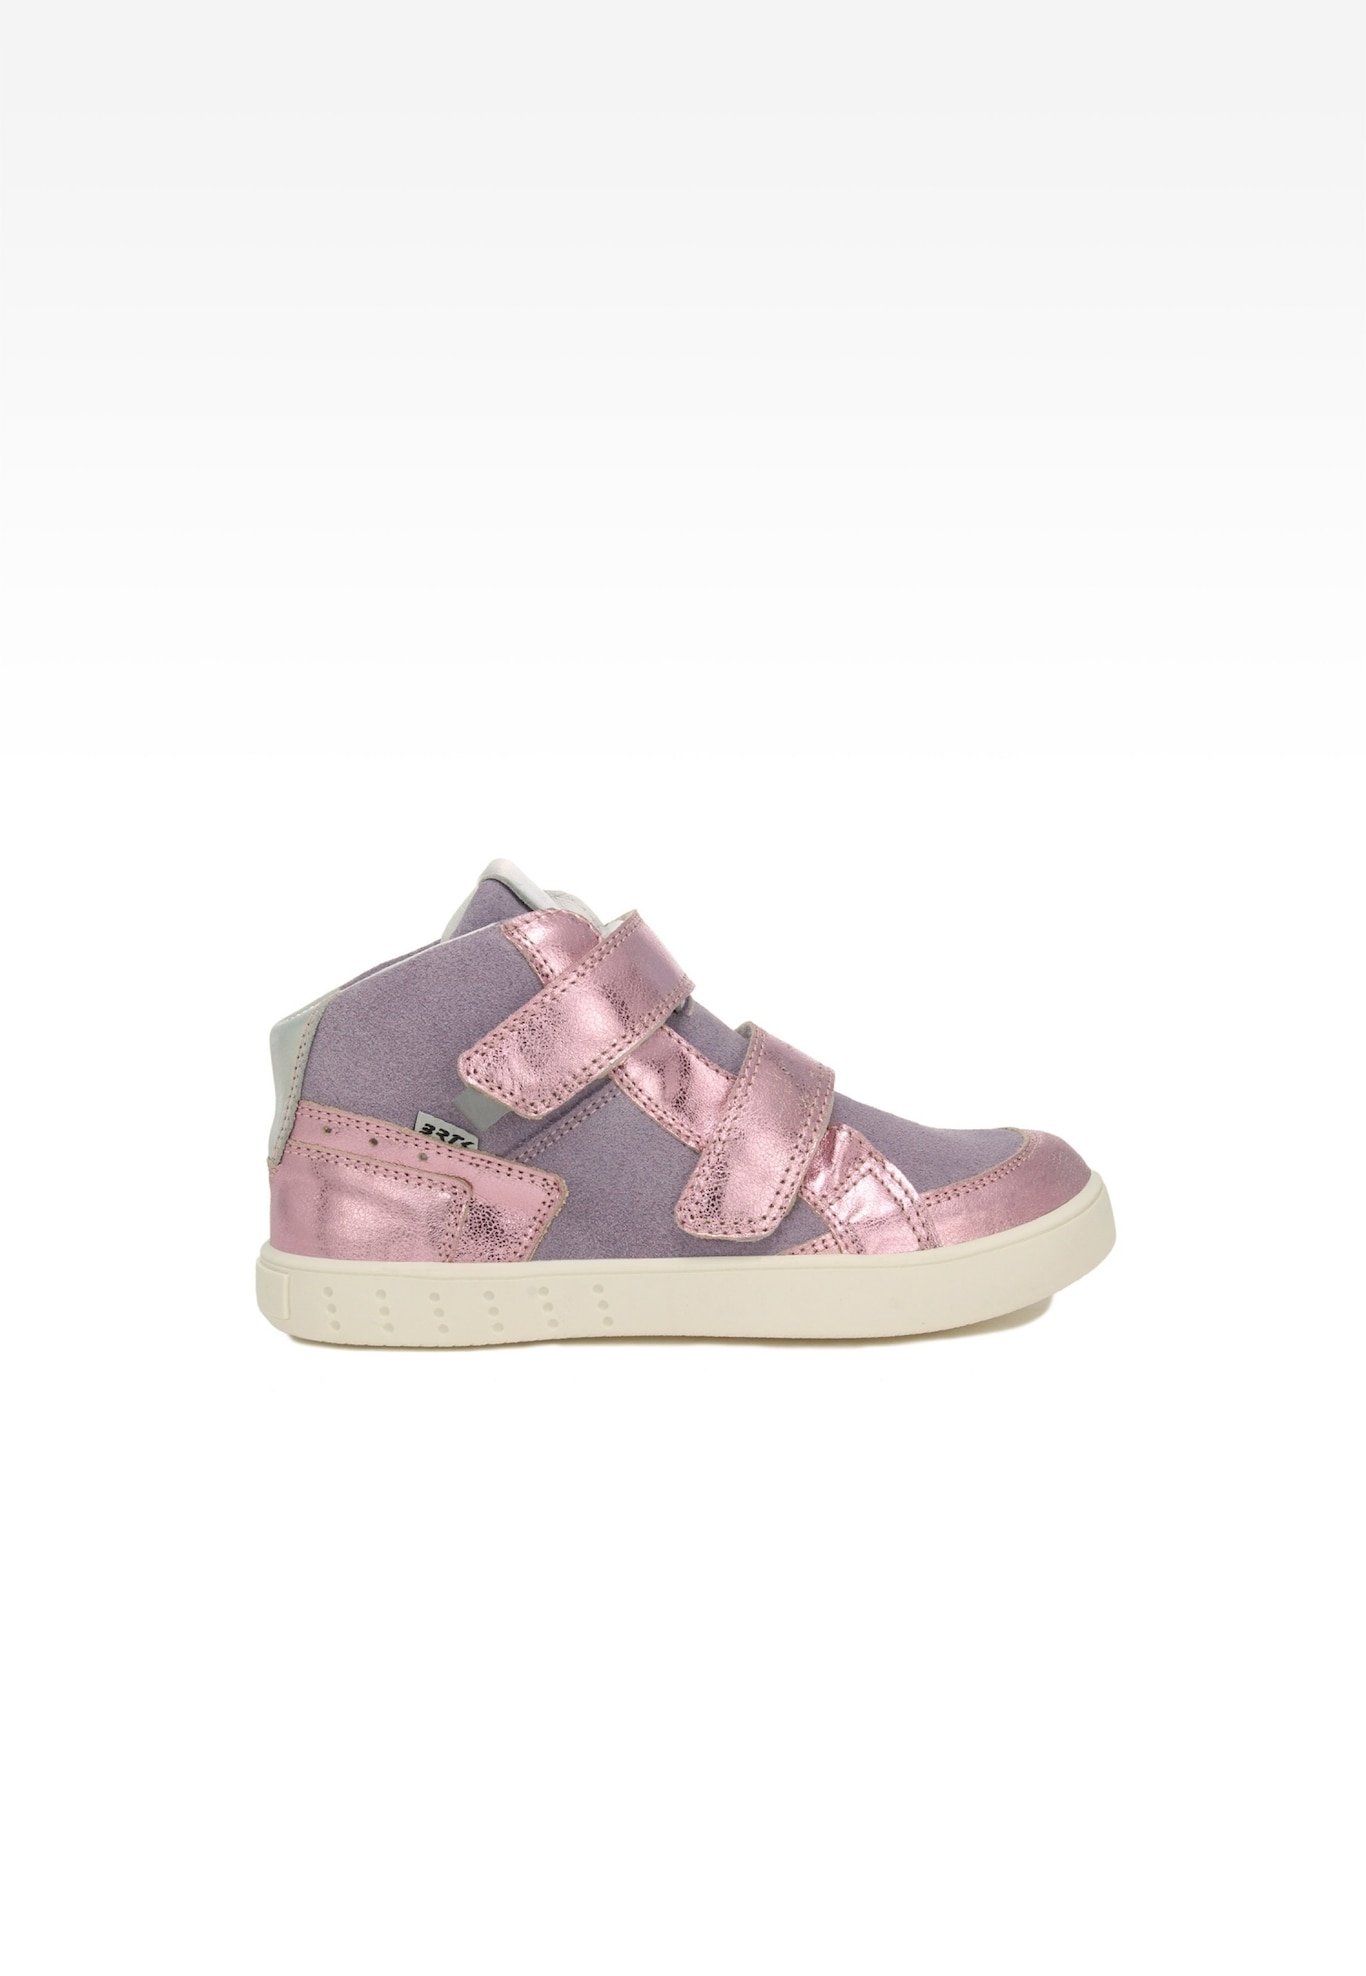 Sneakers BARTEK 24414-038, dla dziewcząt, fioletowo-różowy